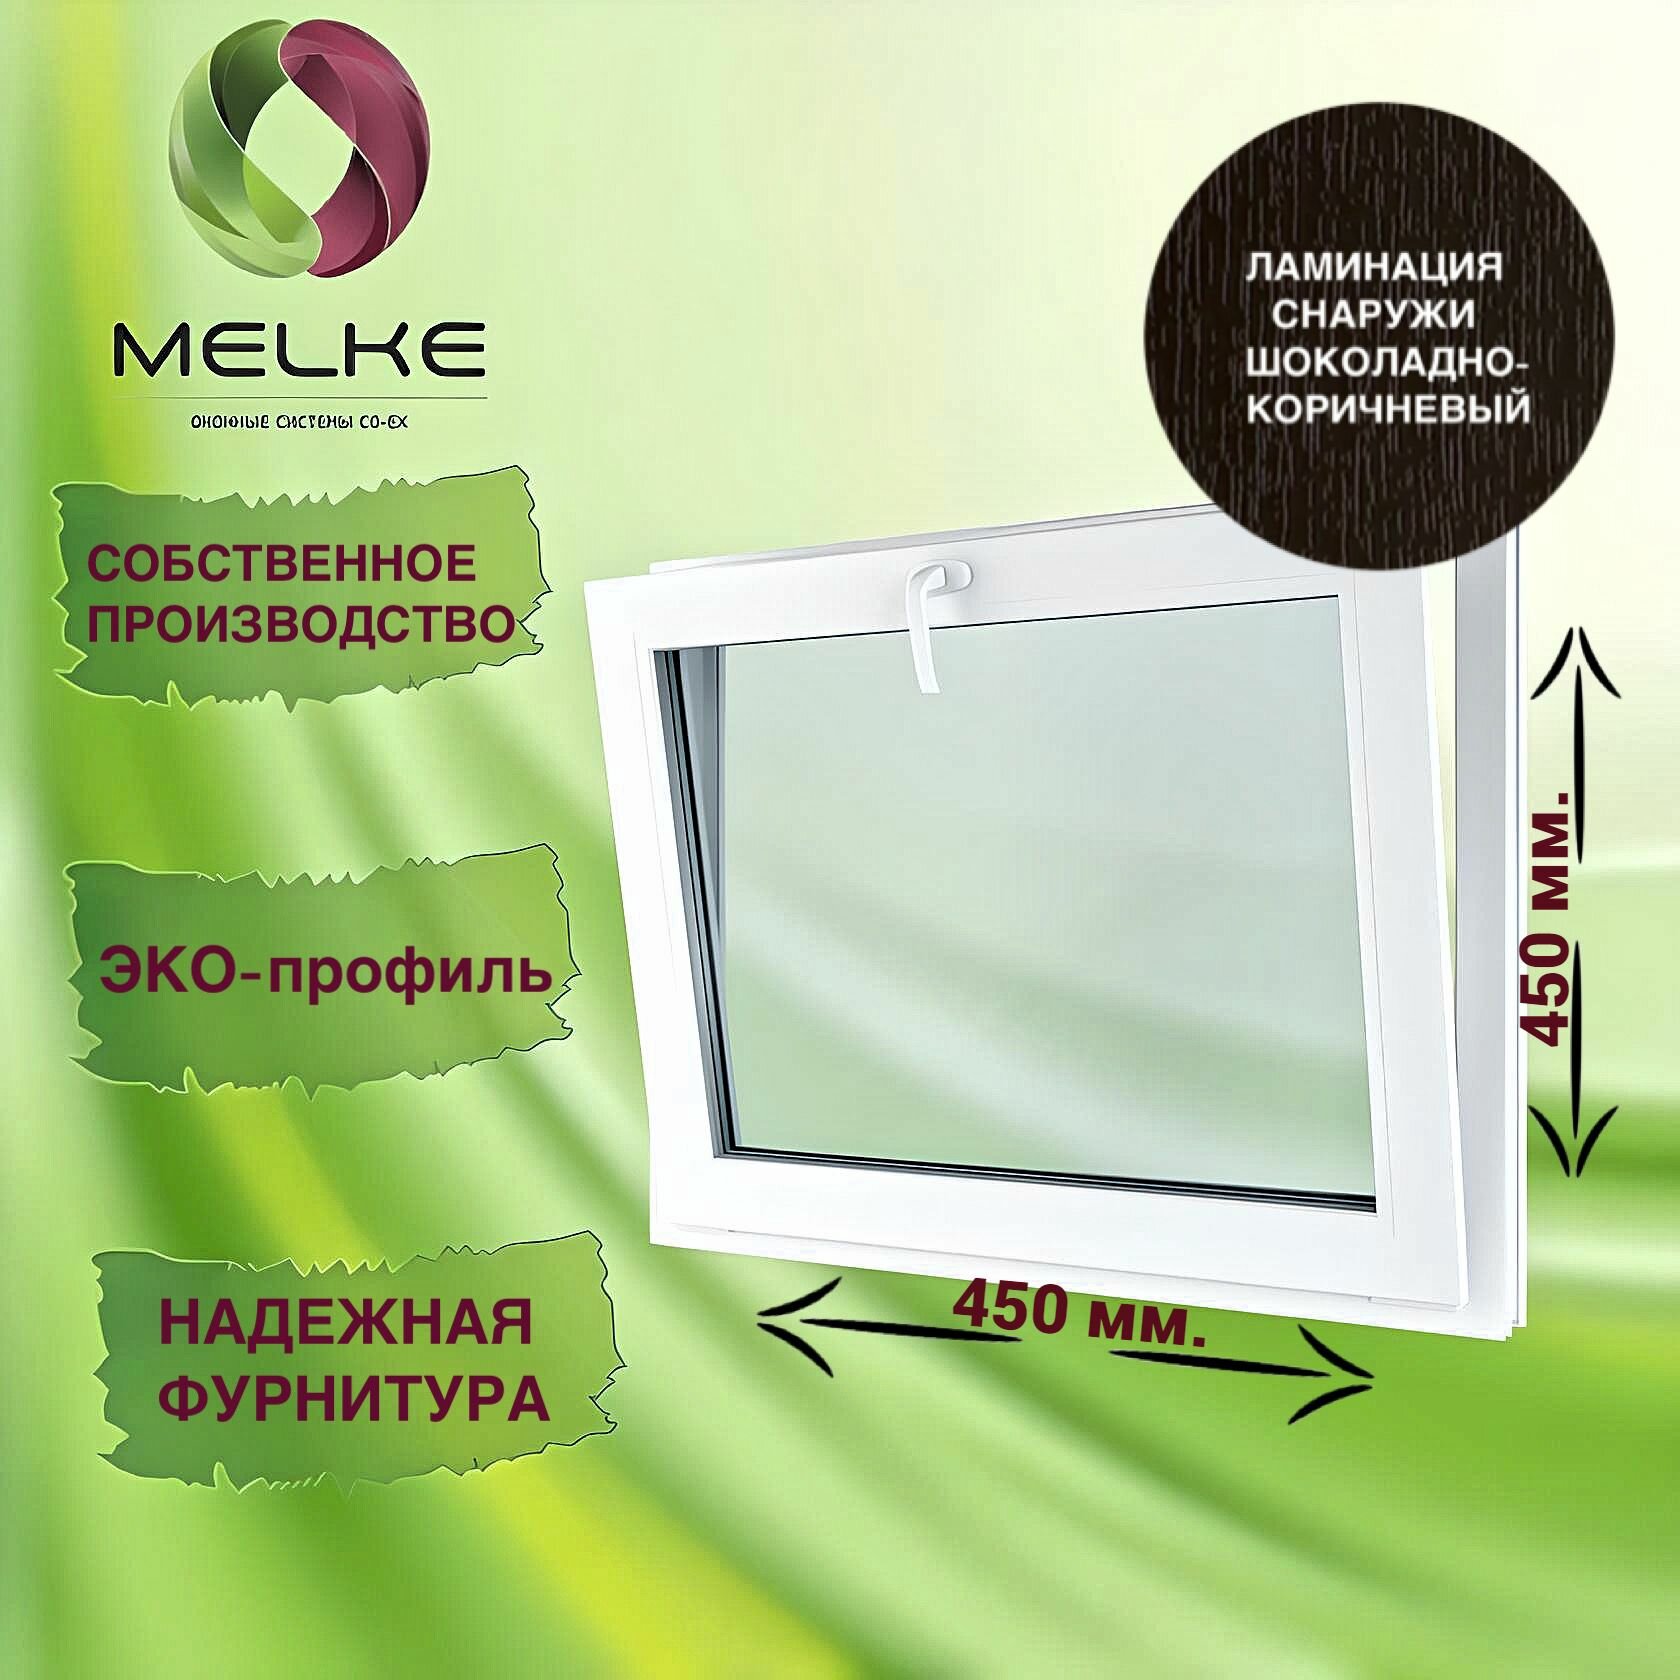 Окно с фрамужным открыванием 450 x 450 мм, Melke 60, (Фурнитура Vorne), цвет внешней ламинации Шоколадно-коричневый, 2-х камерный стеклопакет, 3 стекла.